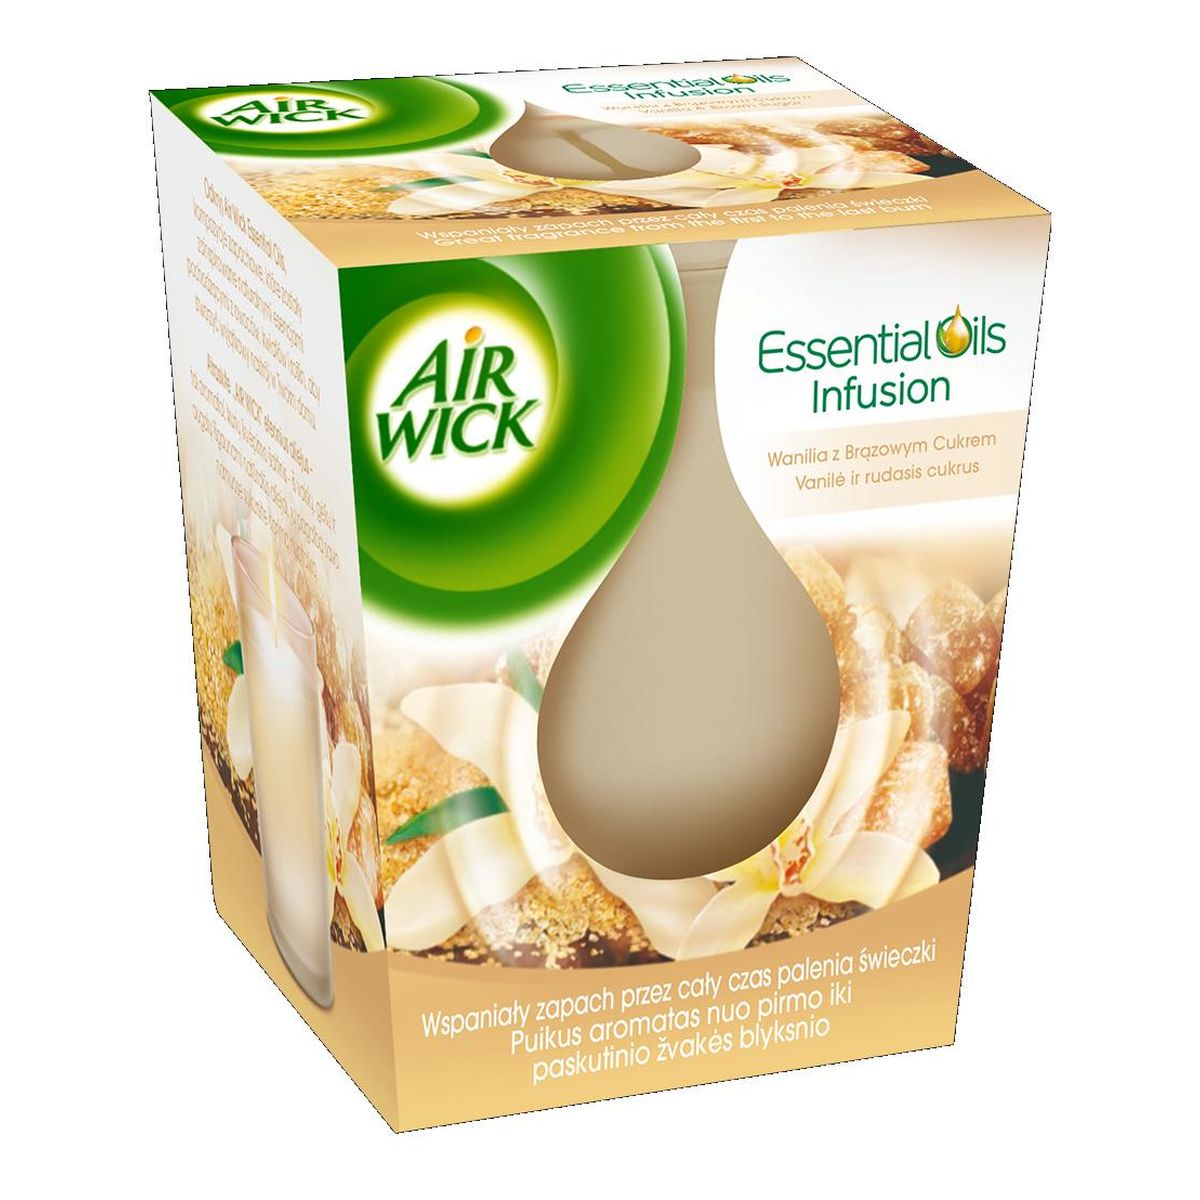 Air Wick Essential Oils Infusion świeczka zapachowa Wanilia z Brązowym Cukrem 105g